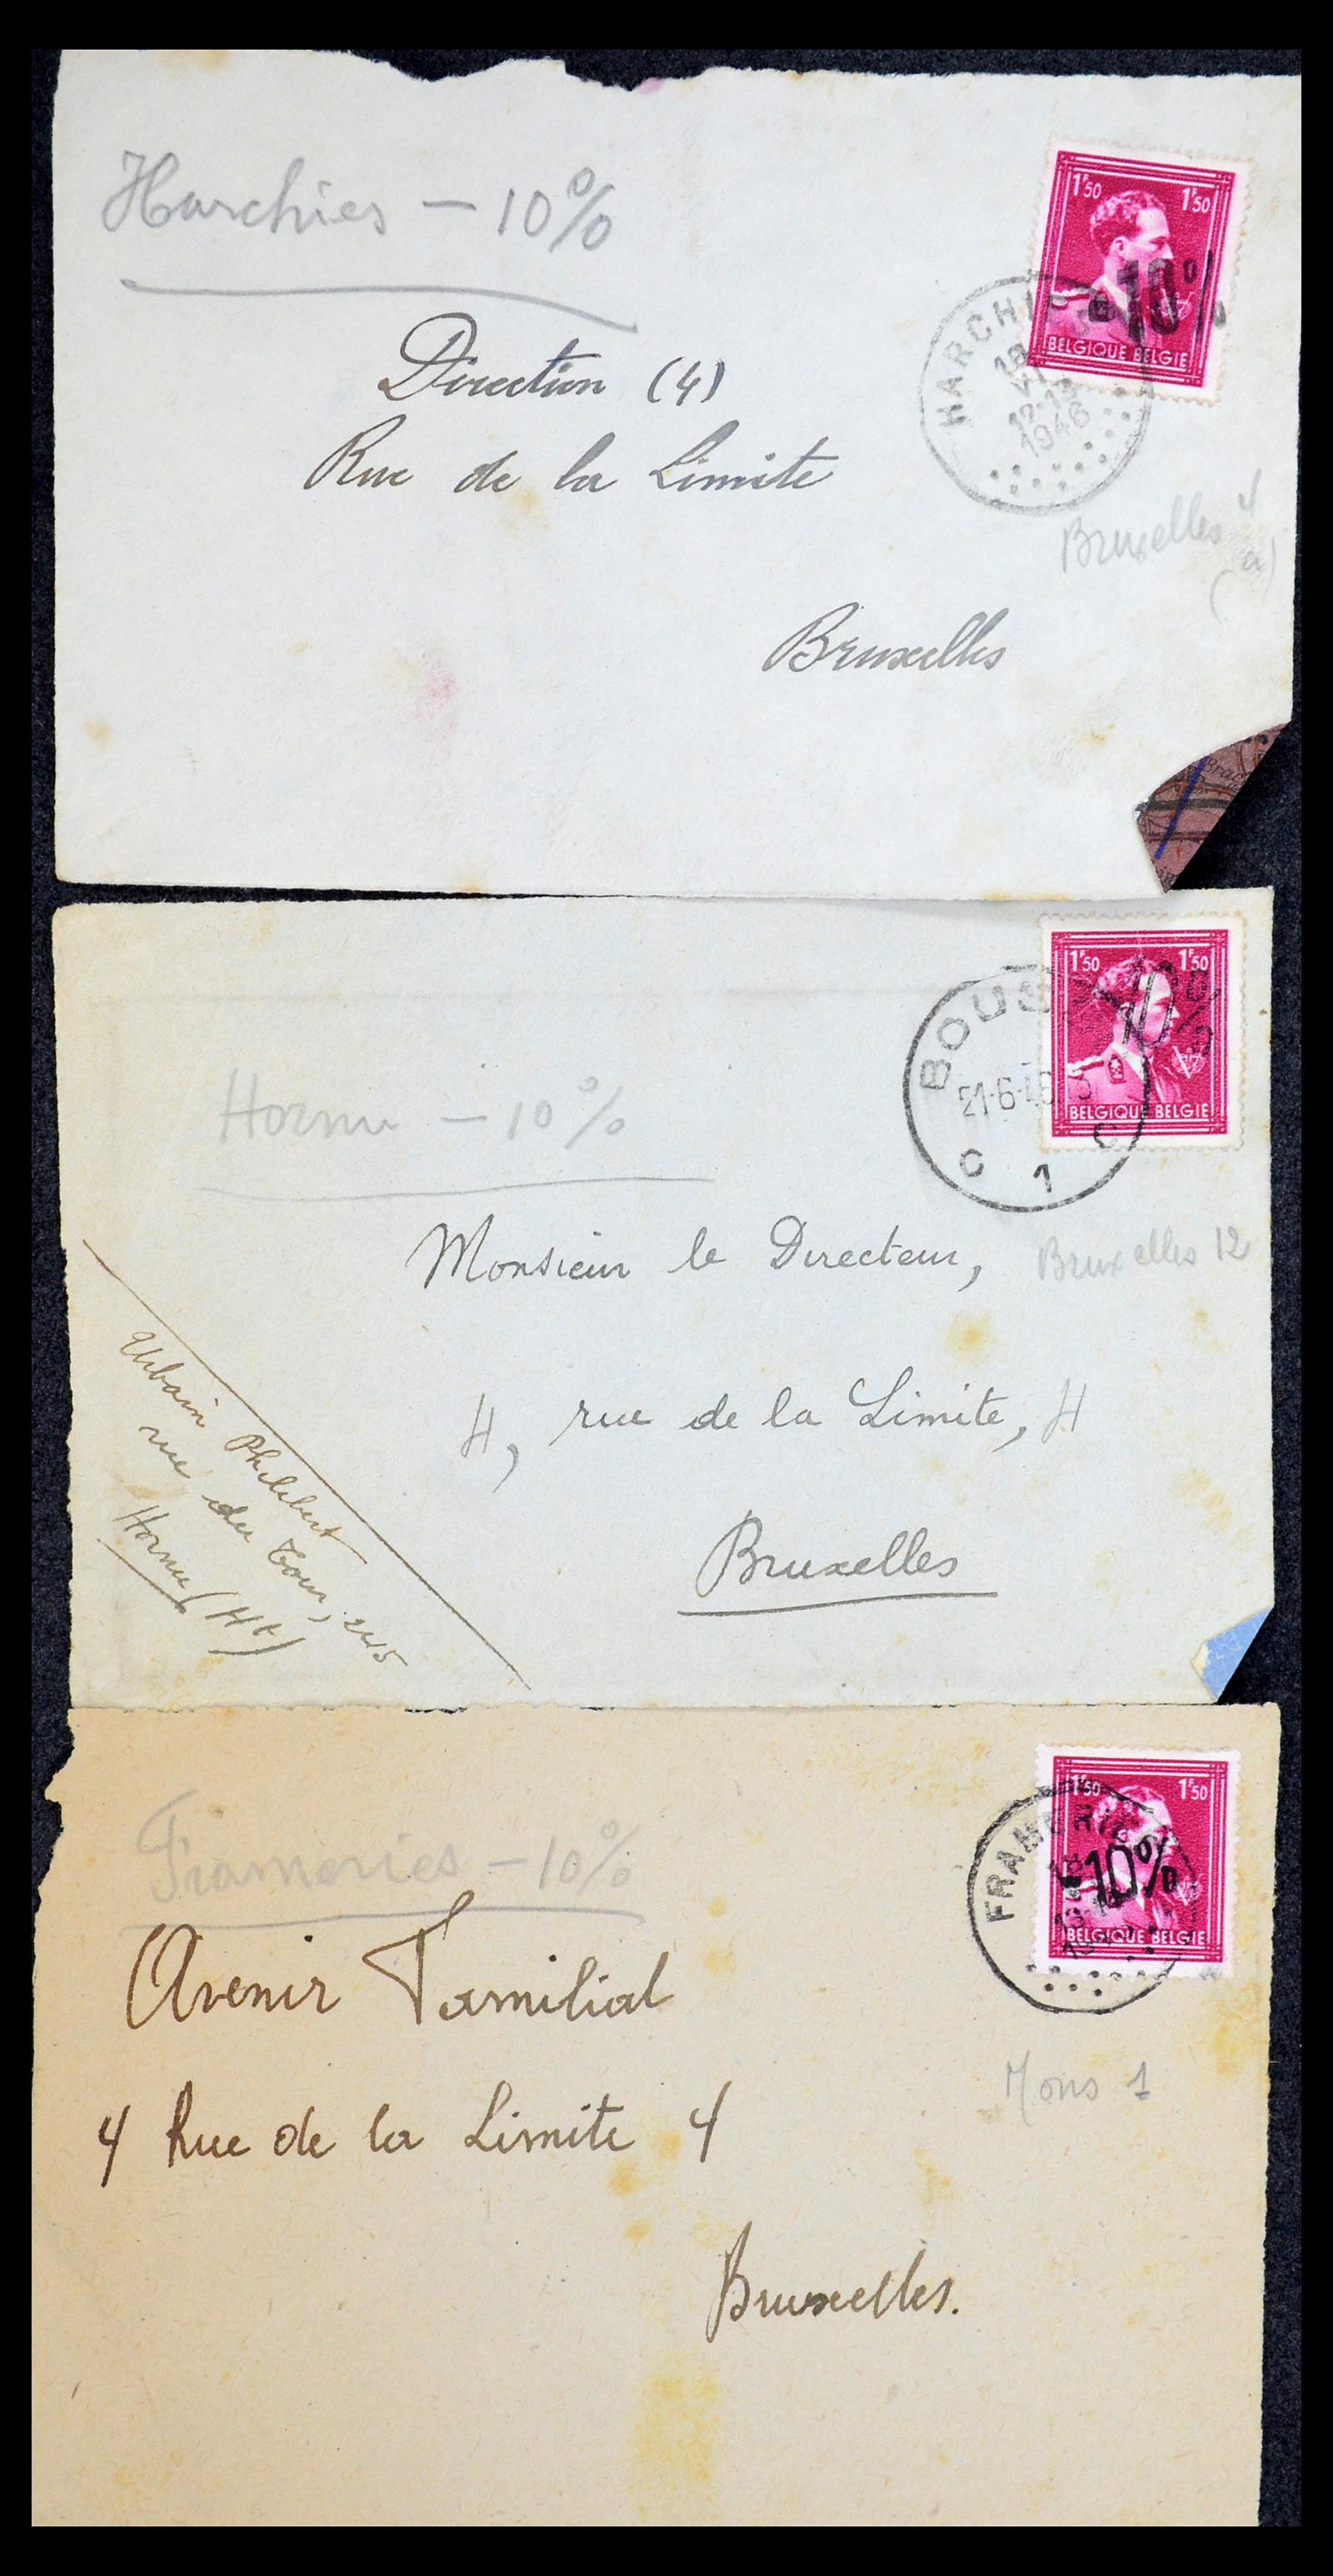 35733 235 - Stamp Collection 35733 Belgium 1946 -10% overprints.